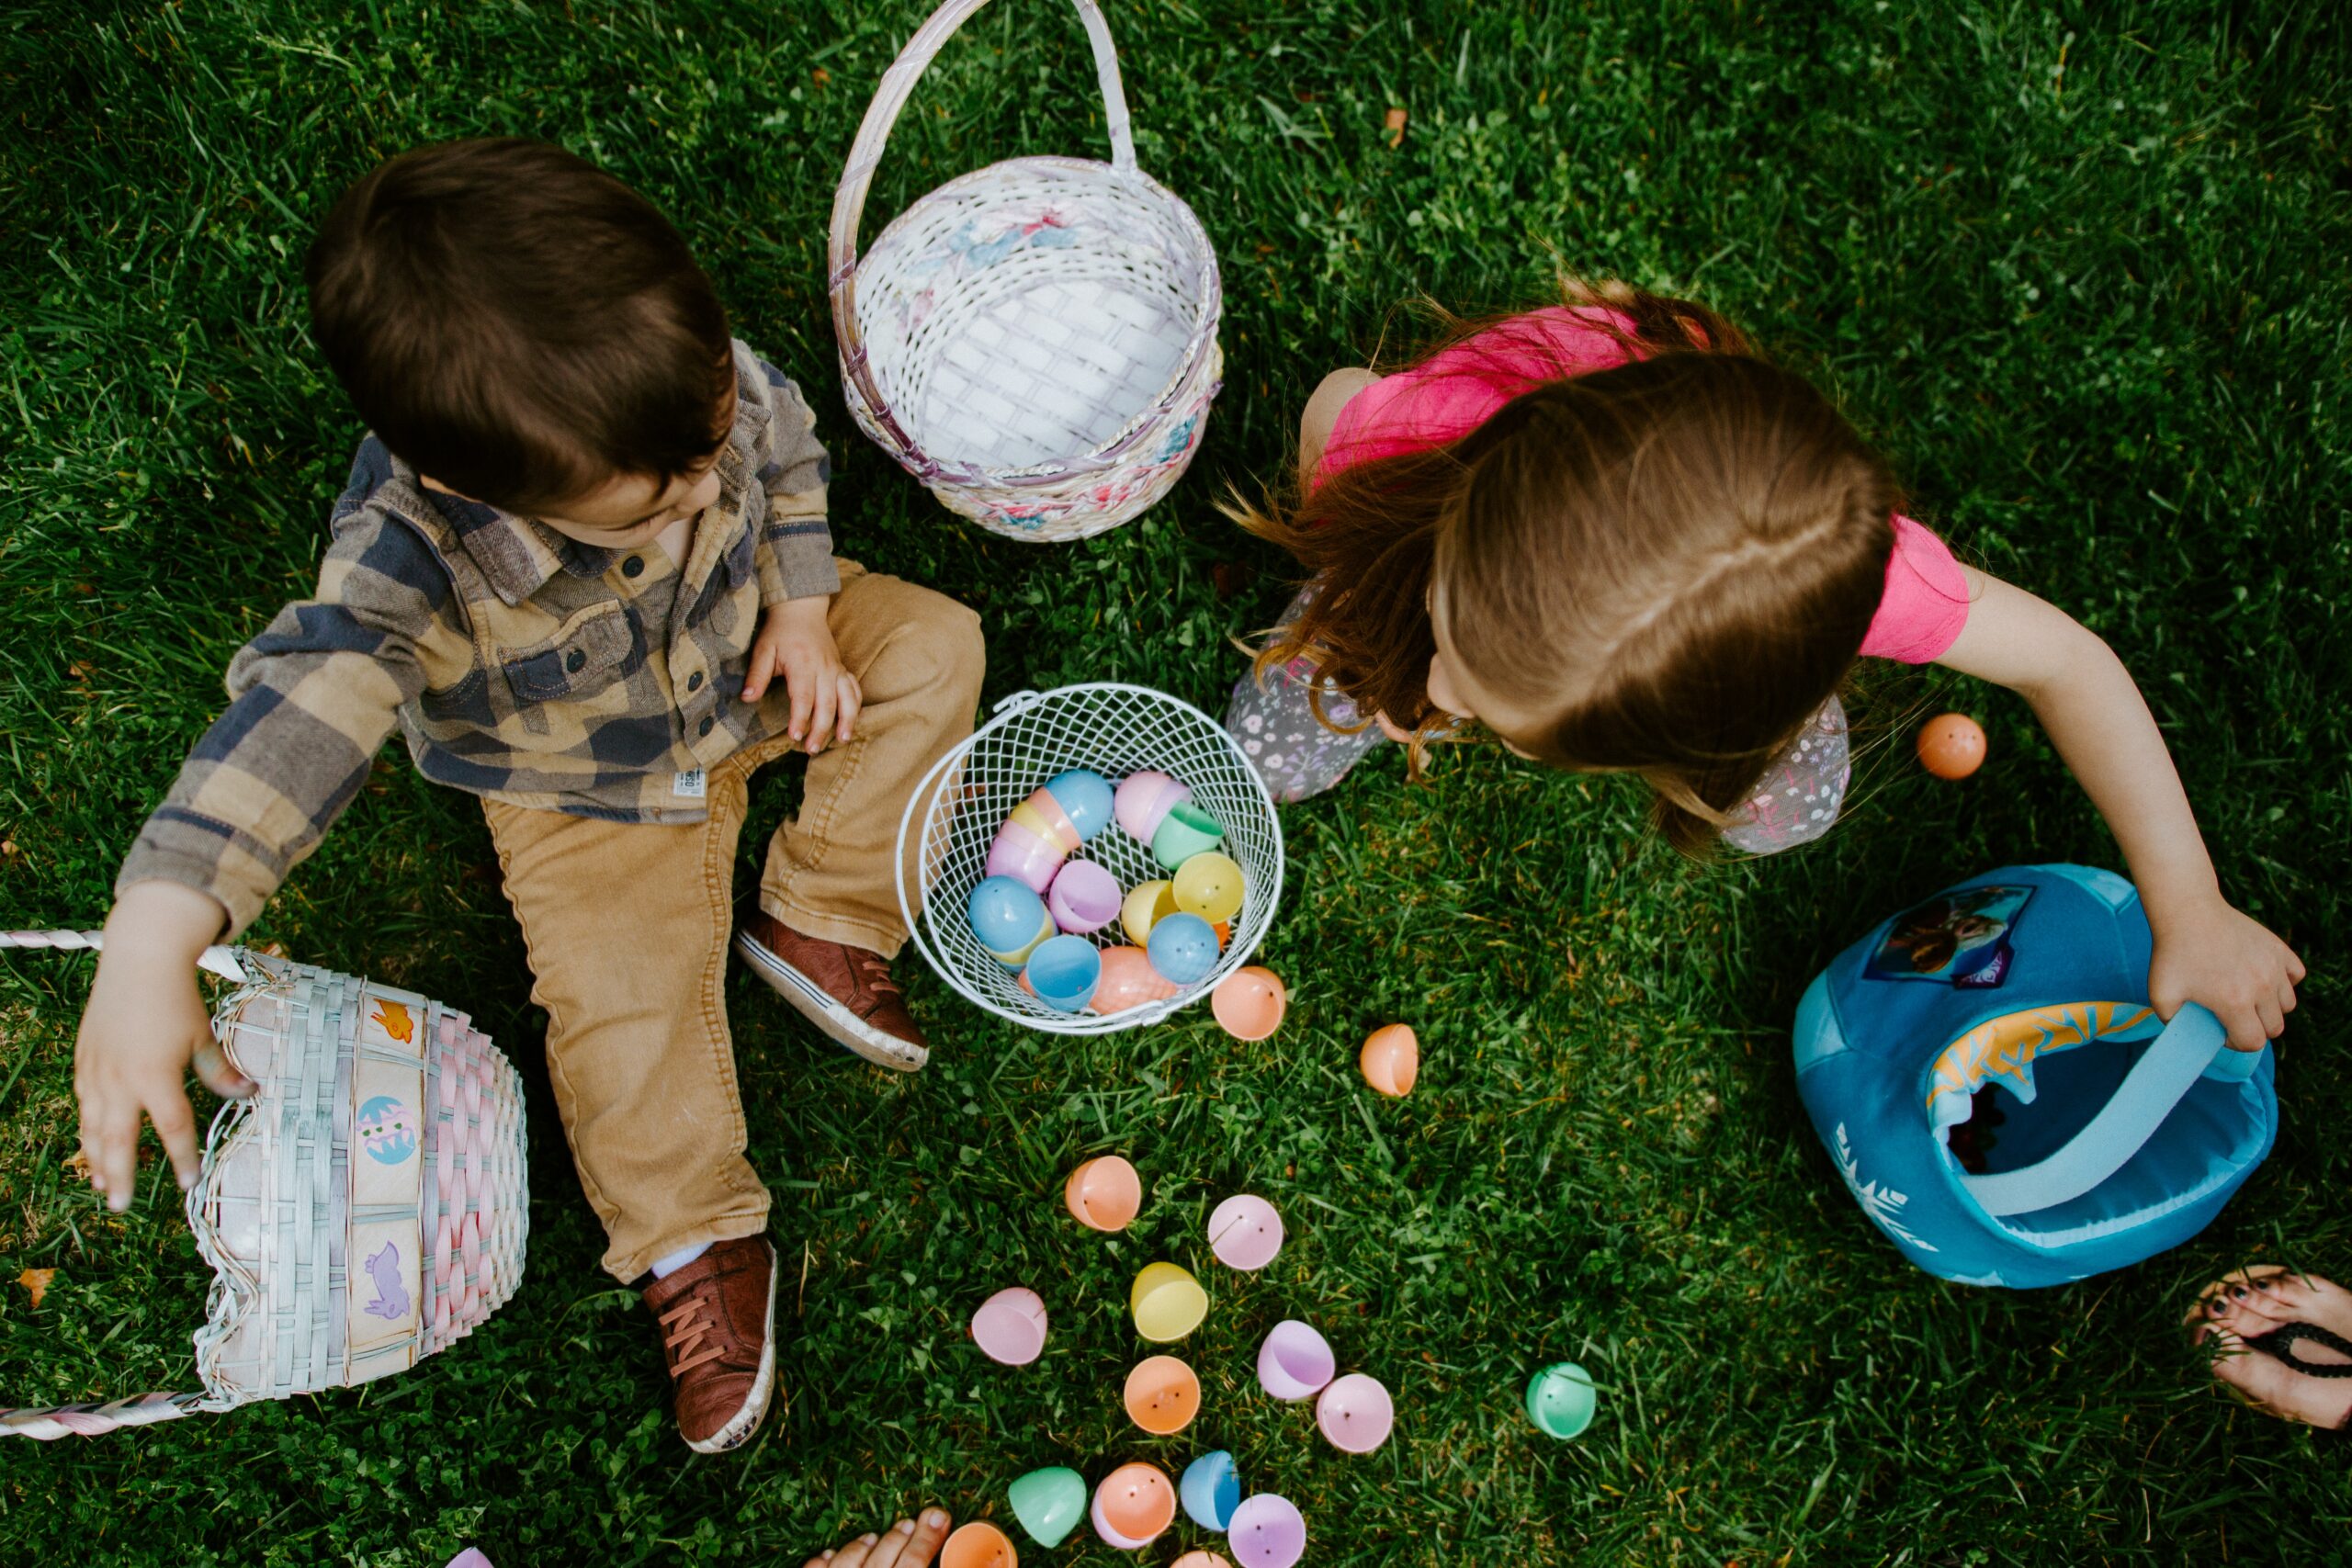 children sharing Easter eggs